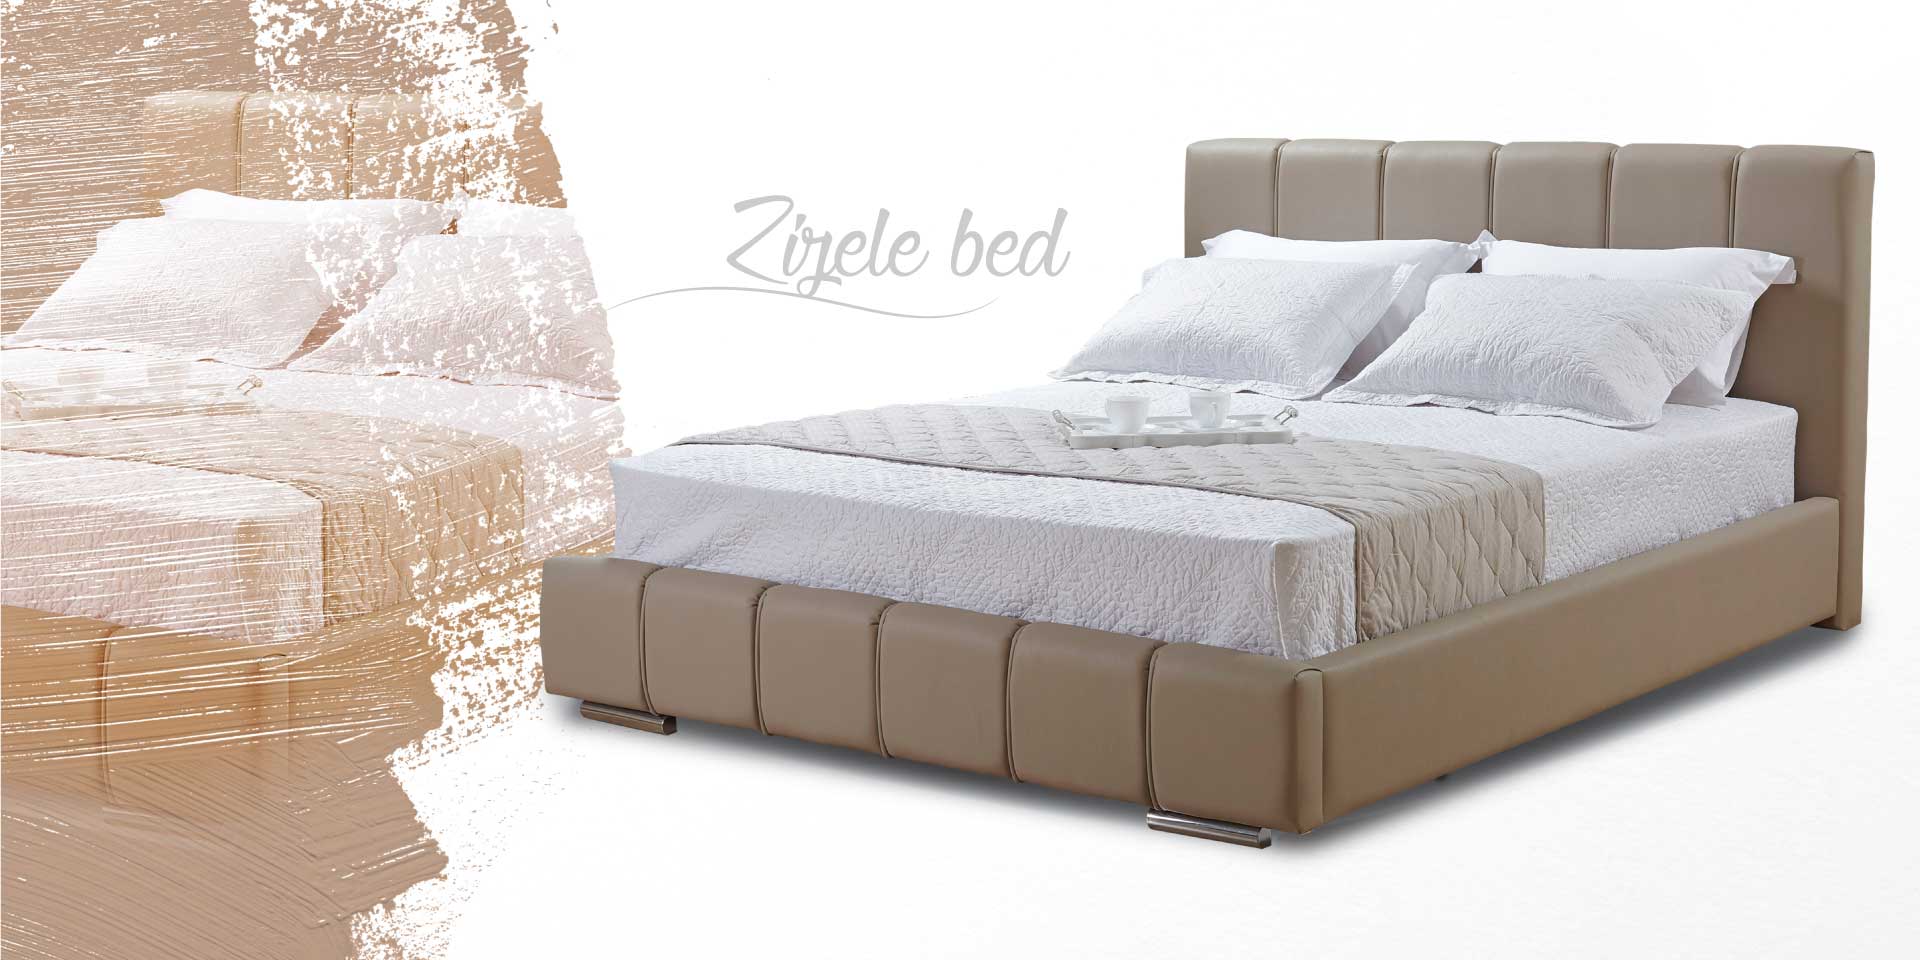 Κρεβάτι Zizele